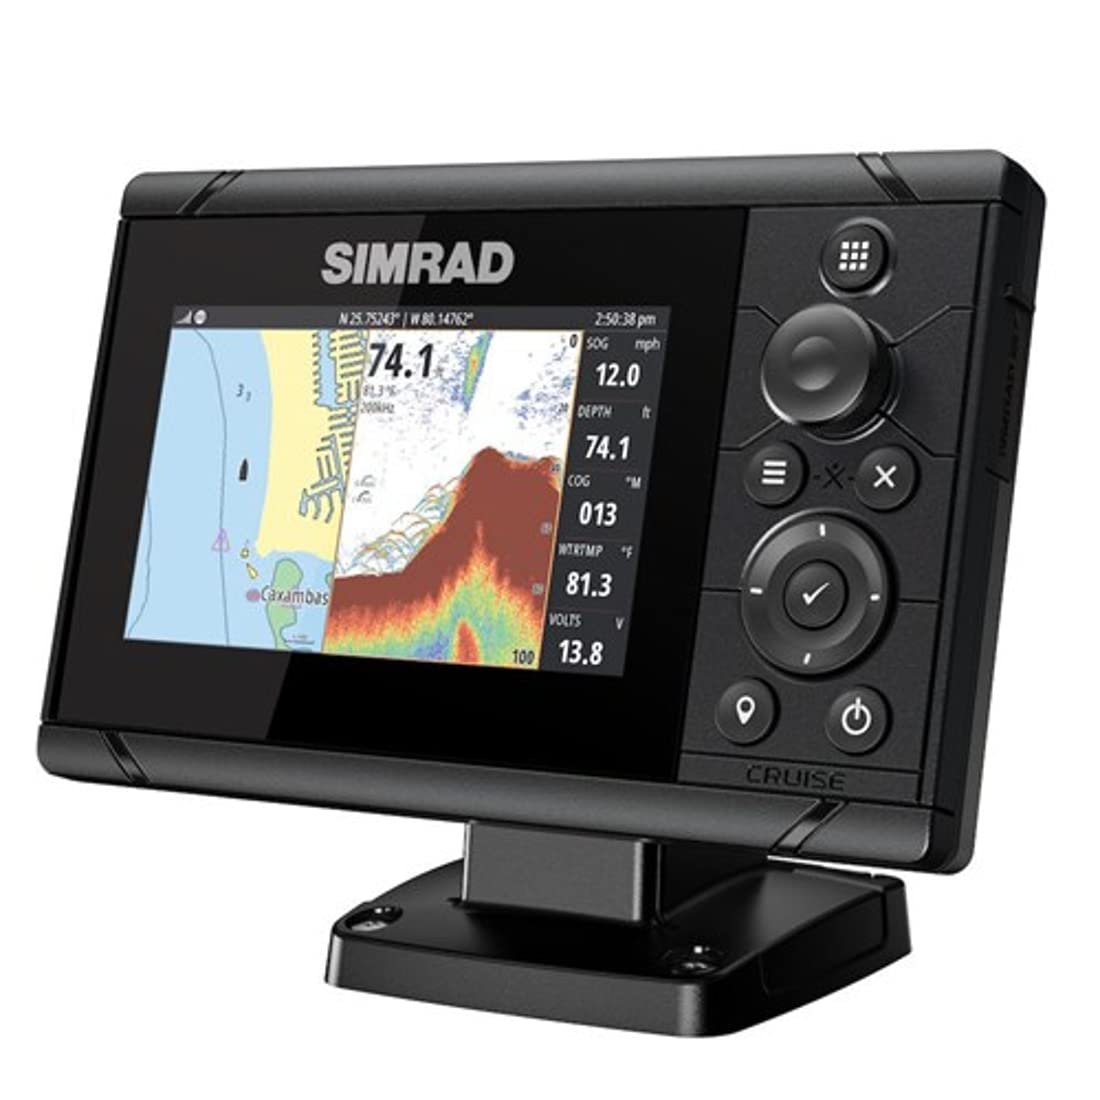 Simrad Cruise 5-inch US Coastal GPS Chartplotter with 83/200 Transom Mount Transducer-000-14995-001